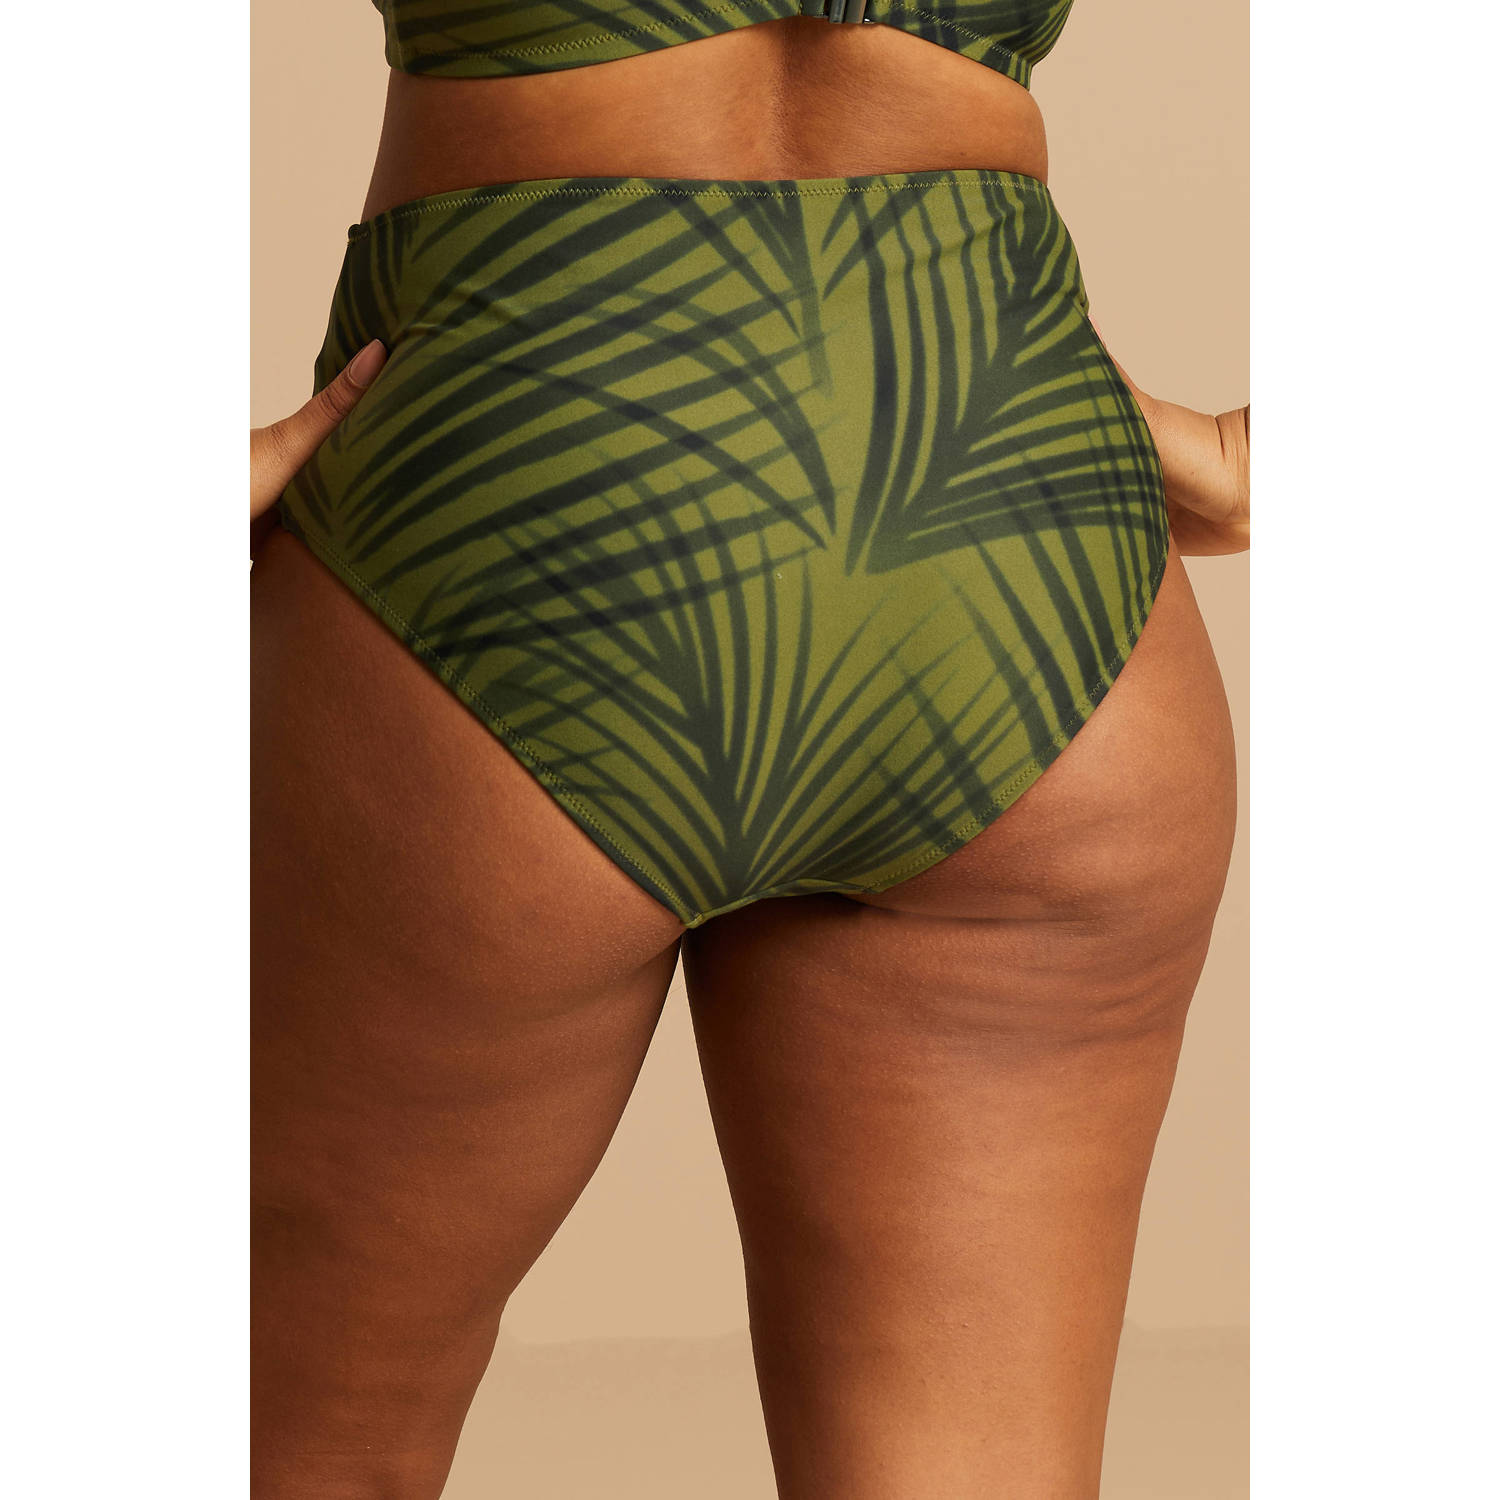 BEACHWAVE Curve high waist bikinibroekje groen zwart